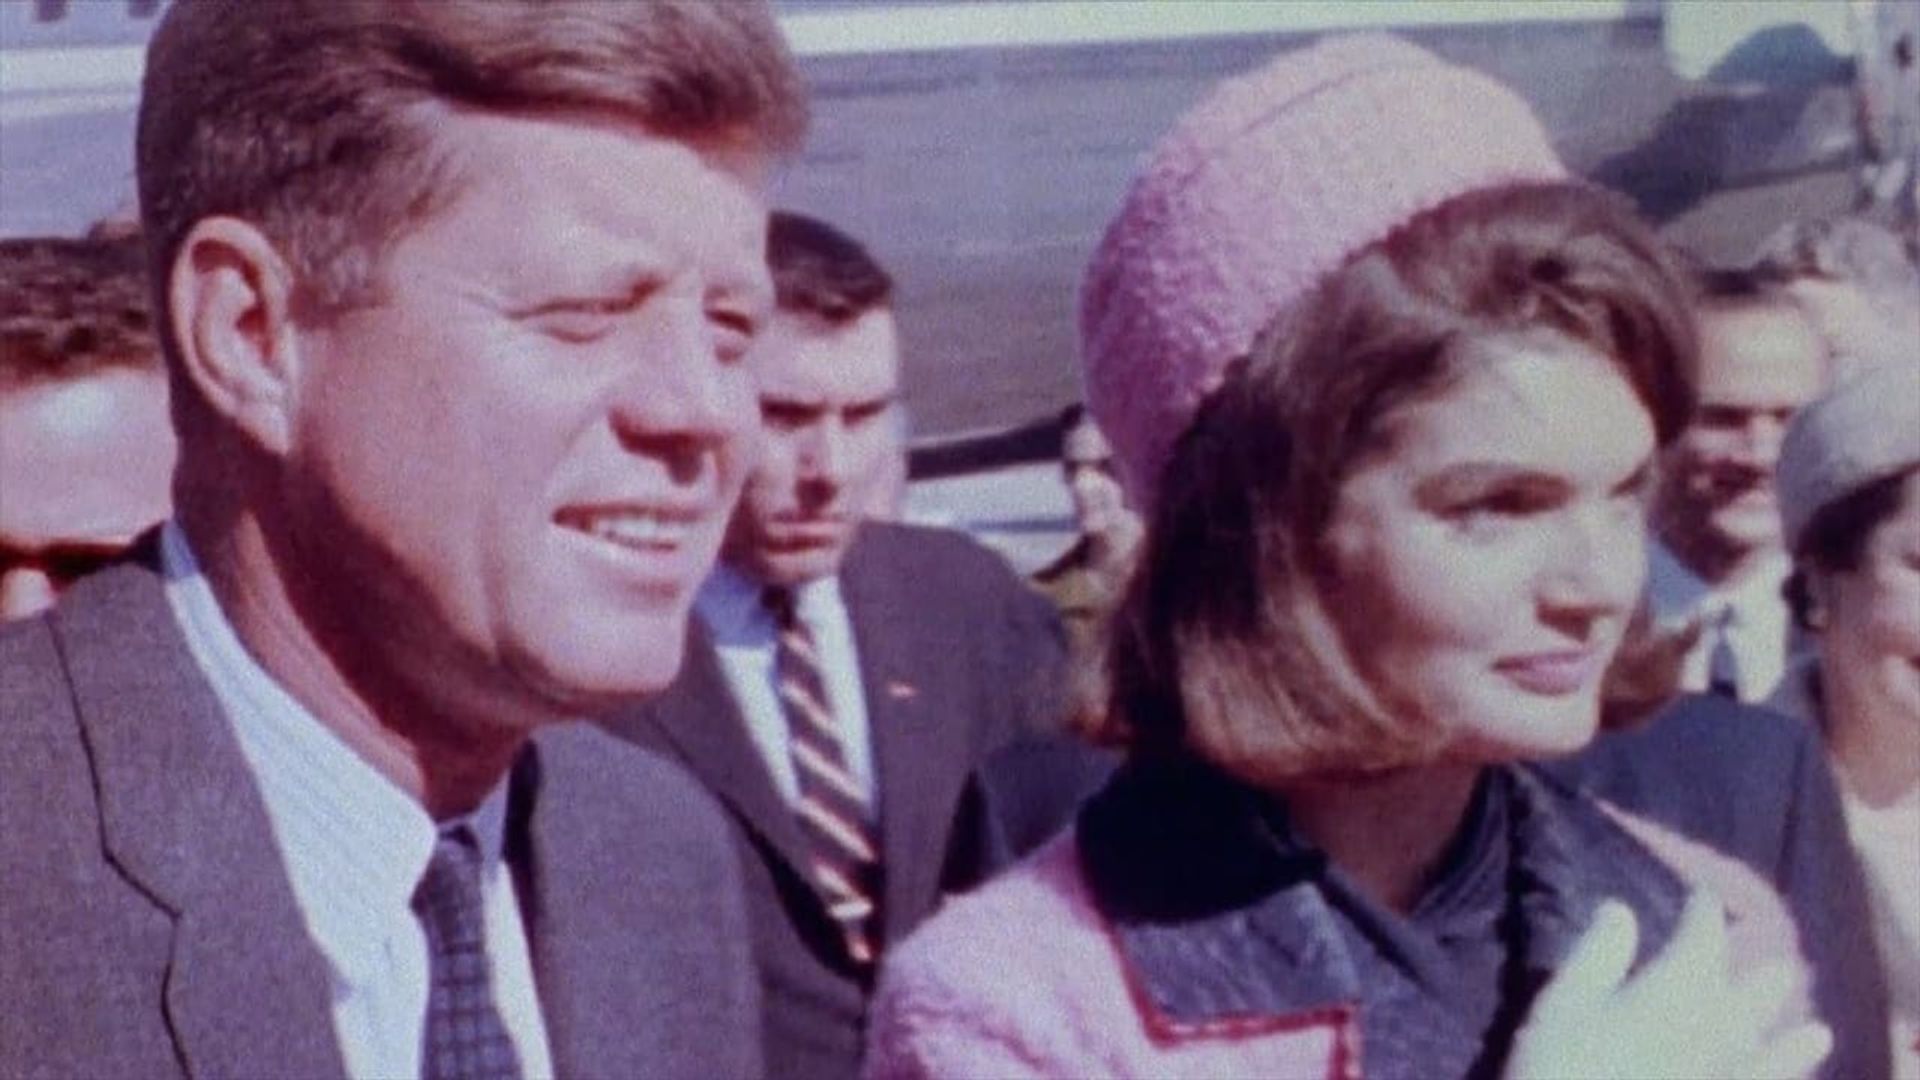 JFK's Secret Killer: The Evidence background